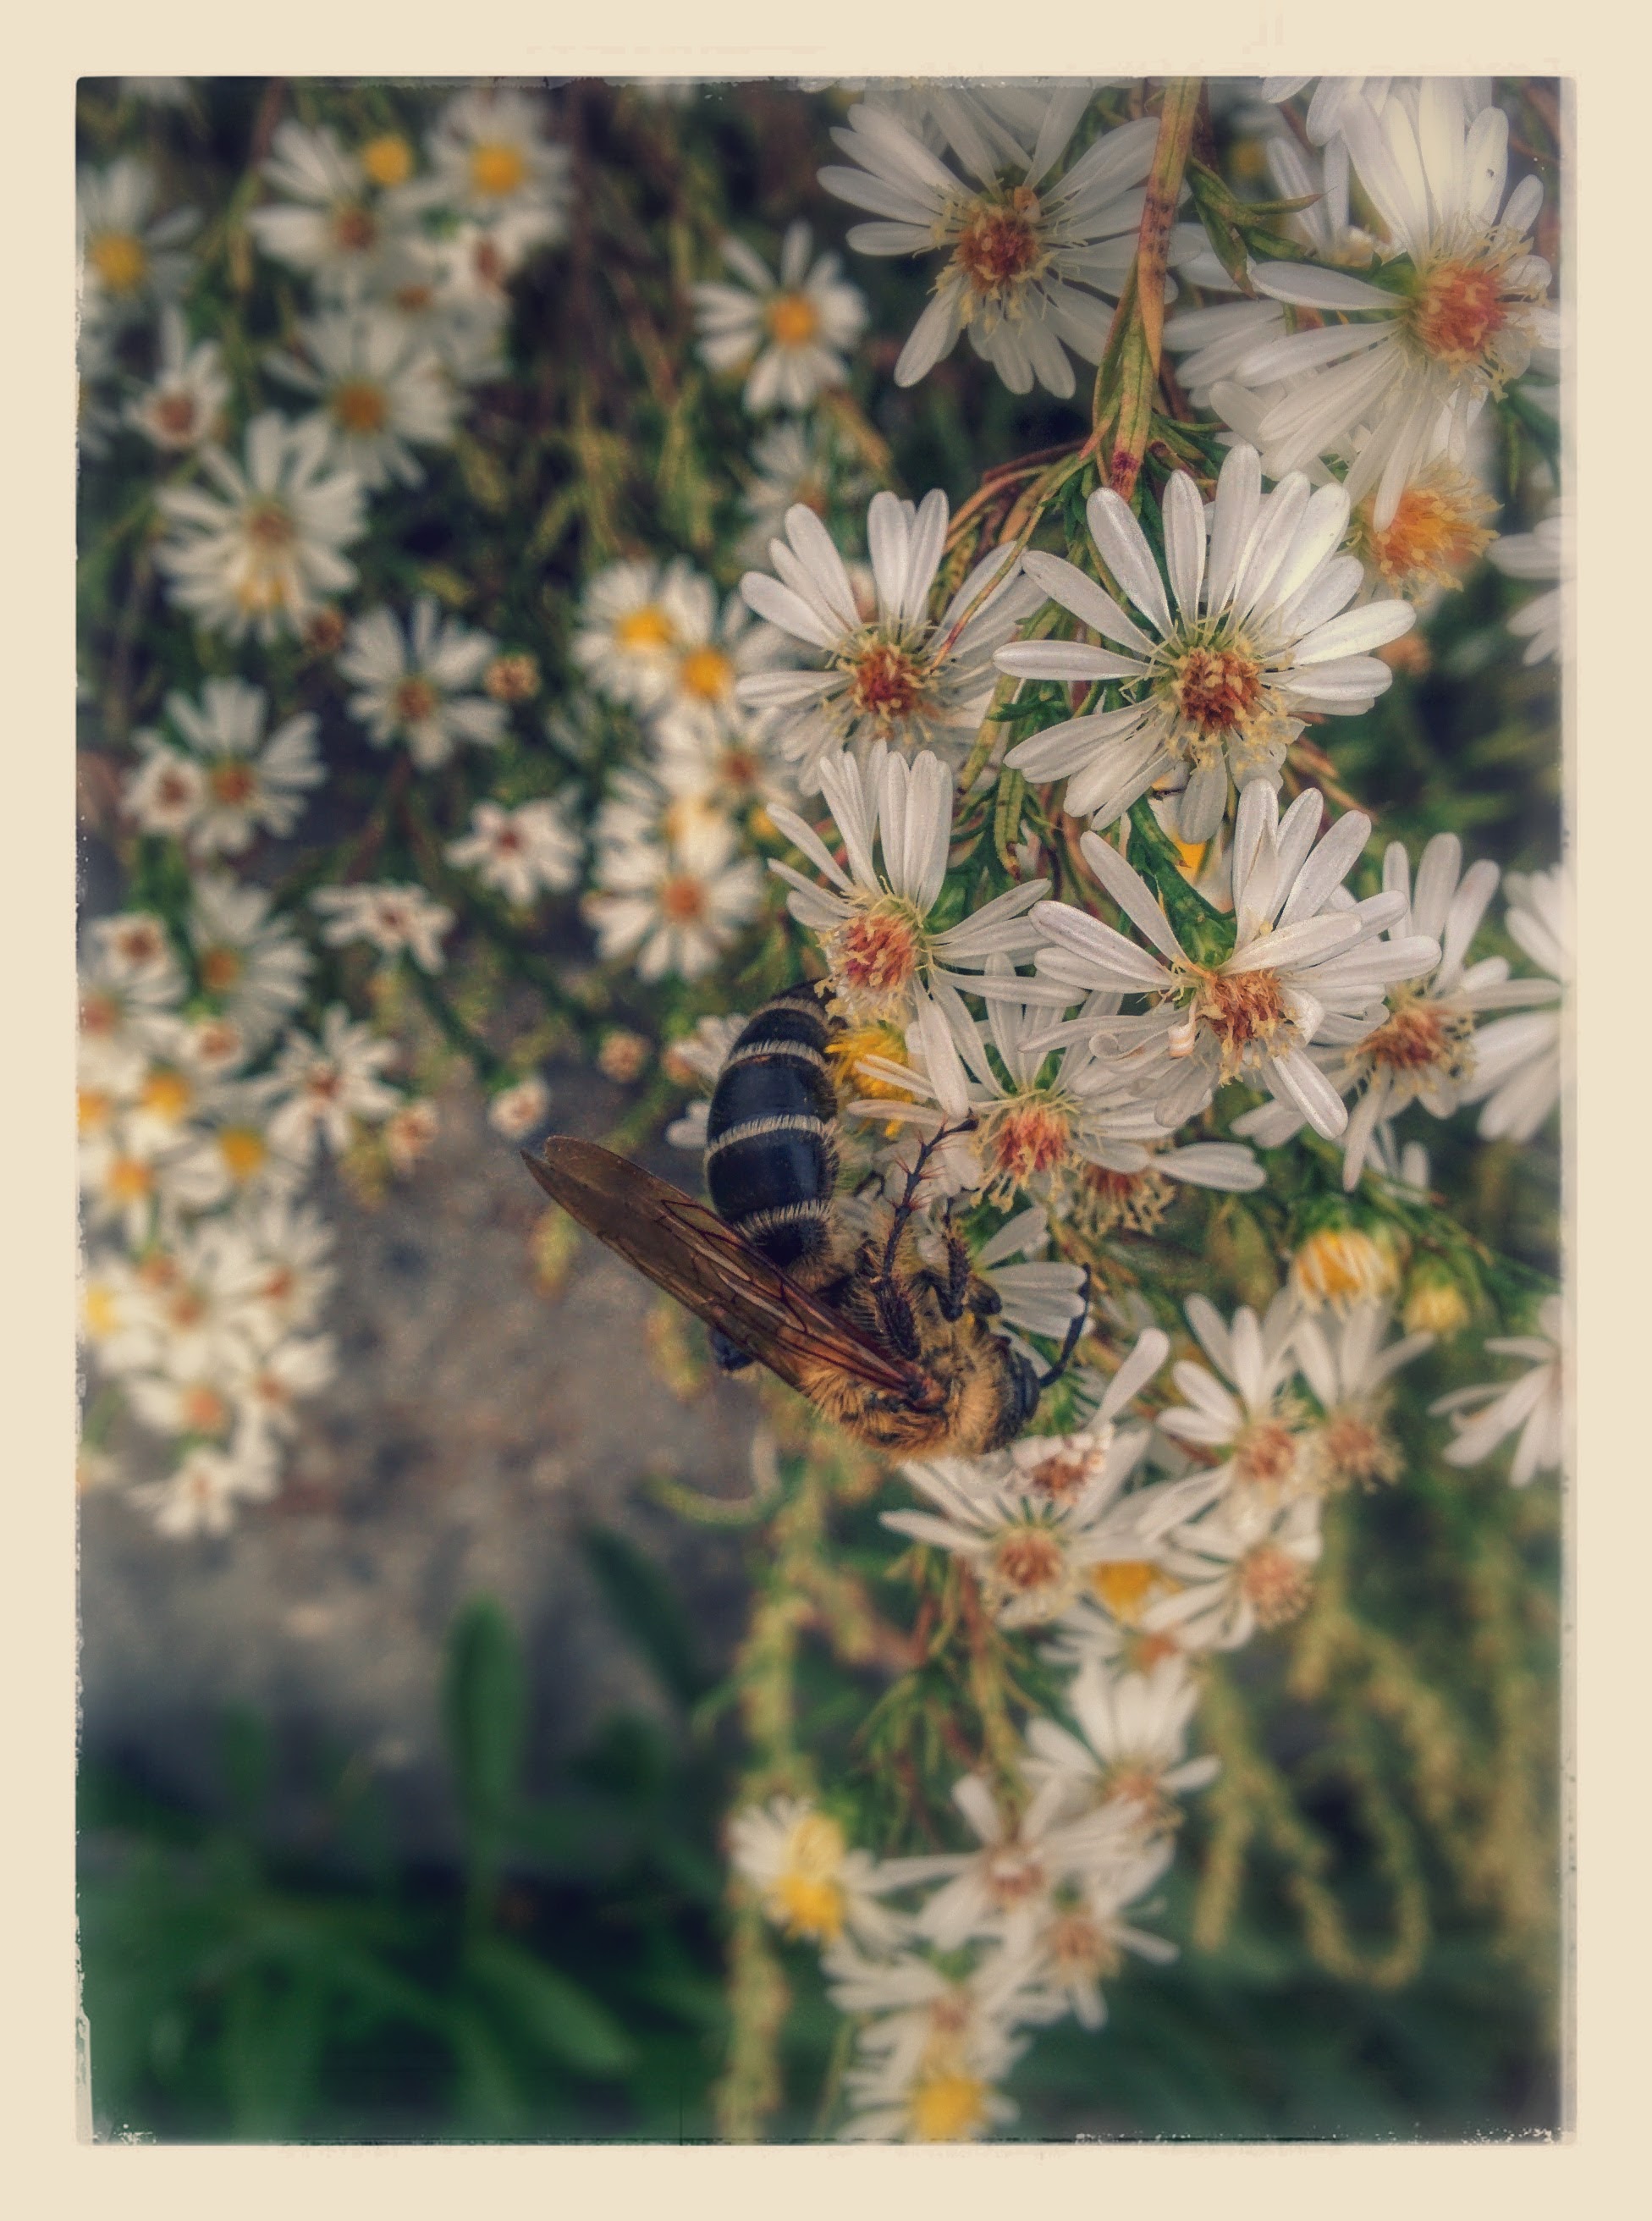 IMG_20151007_152315-EFFECTS.jpg 미국쑥부쟁이 꽃을 찾은 대형 벌, 배벌 암컷